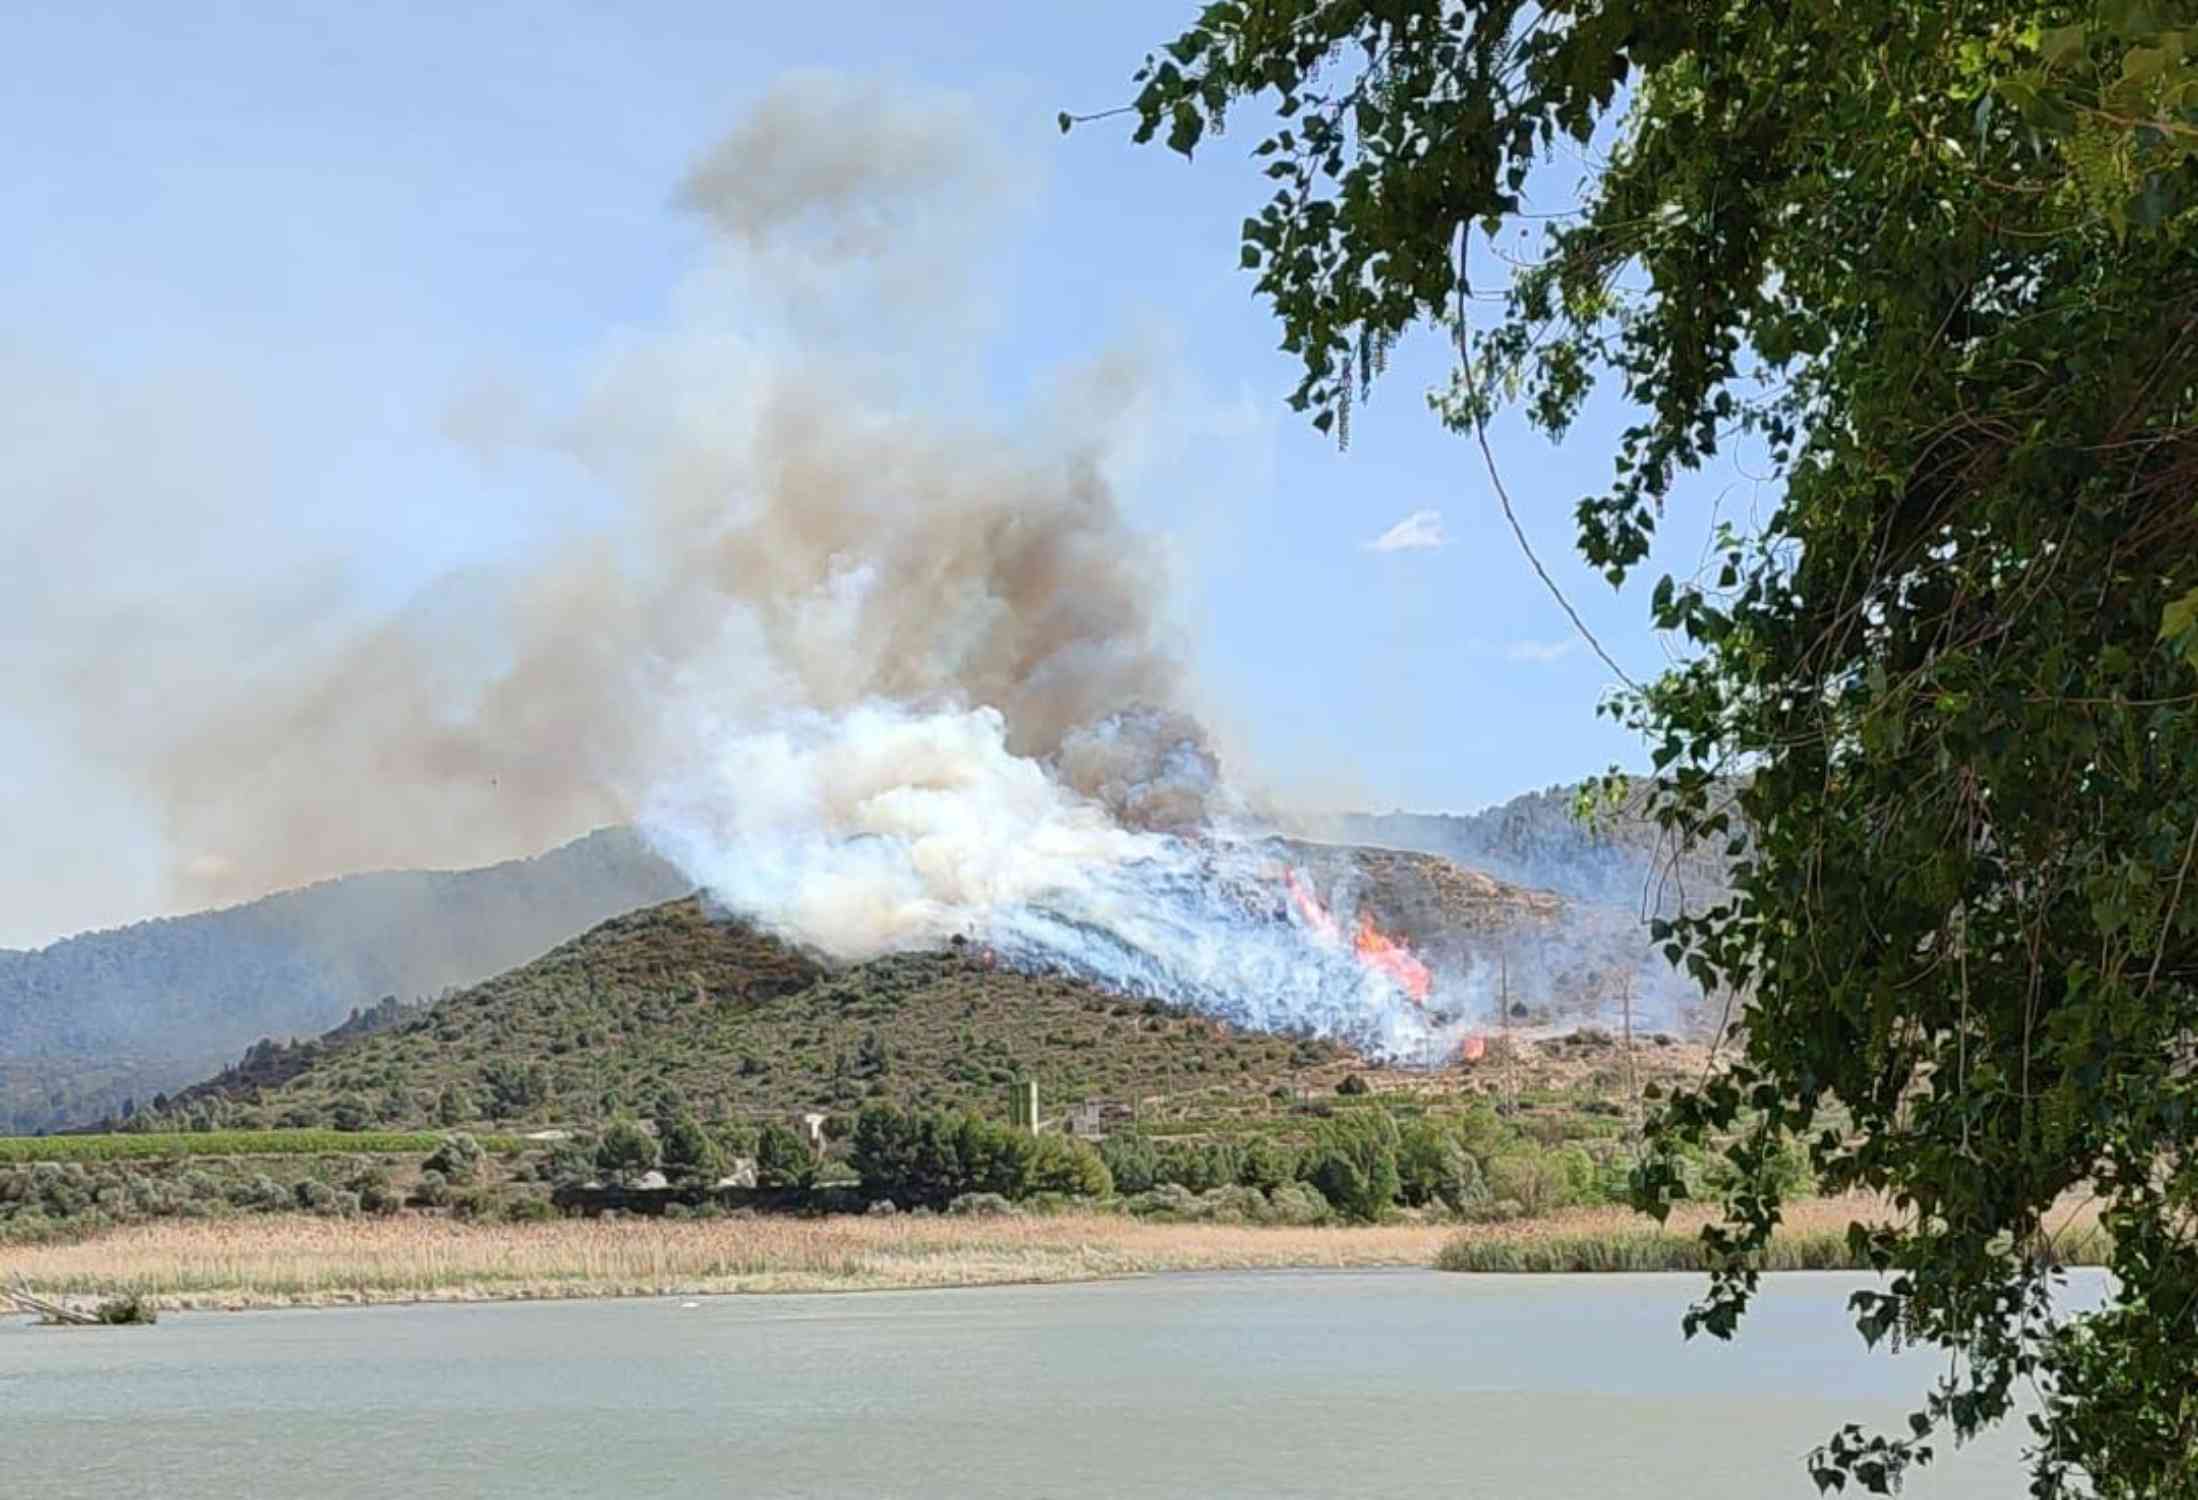 El incendio de la Franja avanza sin control y ya ha quemado 450 hectáreas empujado por el viento